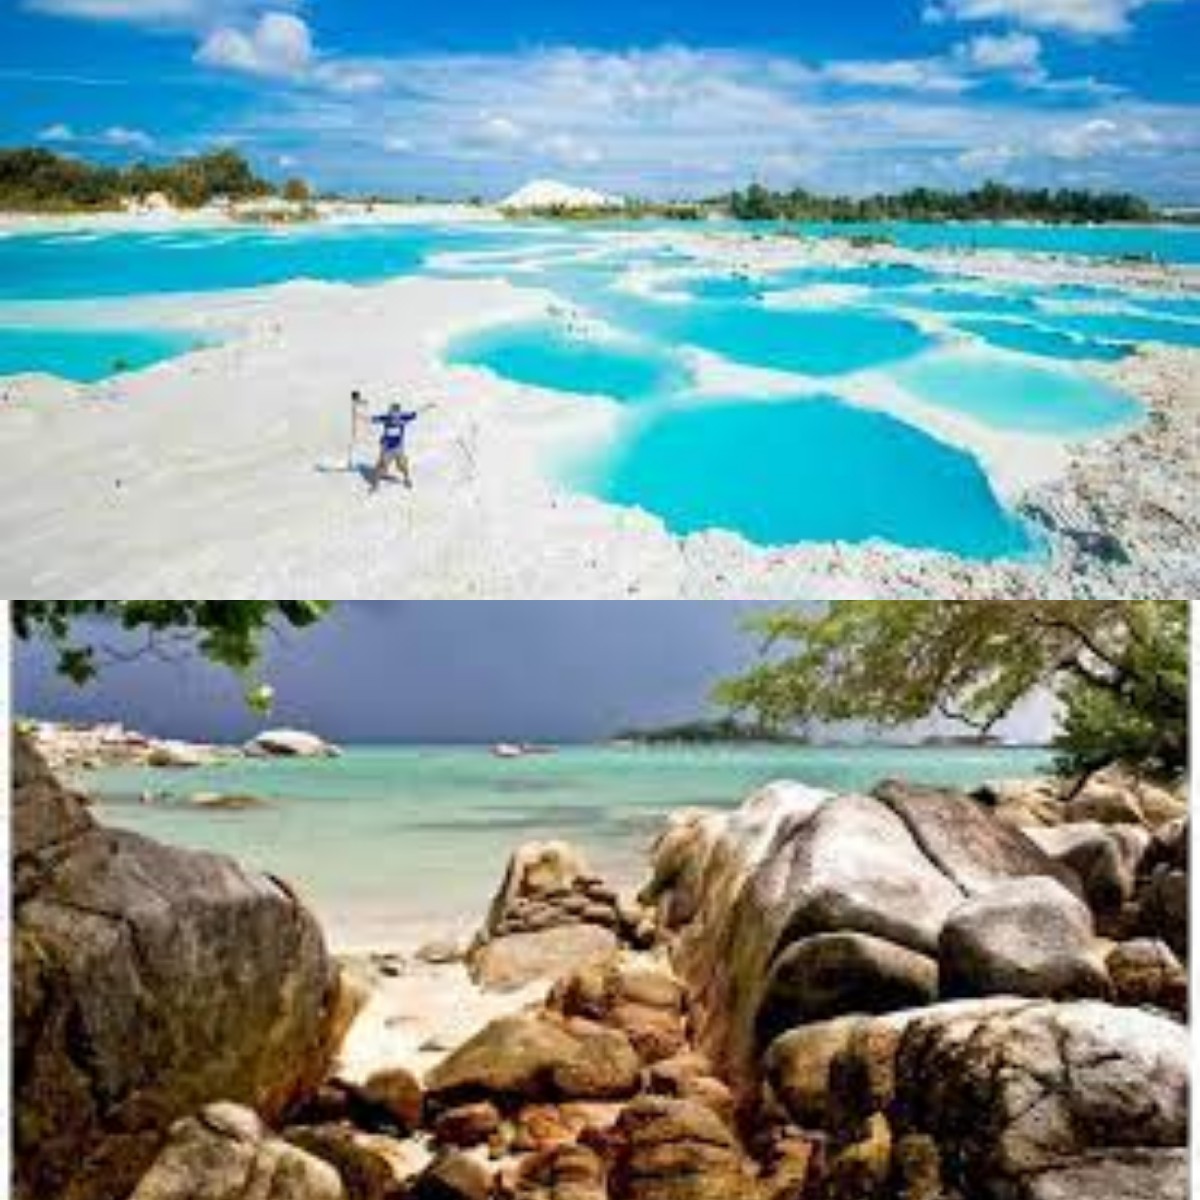 Jangan Lewatkan! Inilah Rekomendasi Tempat Wisata yang Cantik di Bangka Belitung  